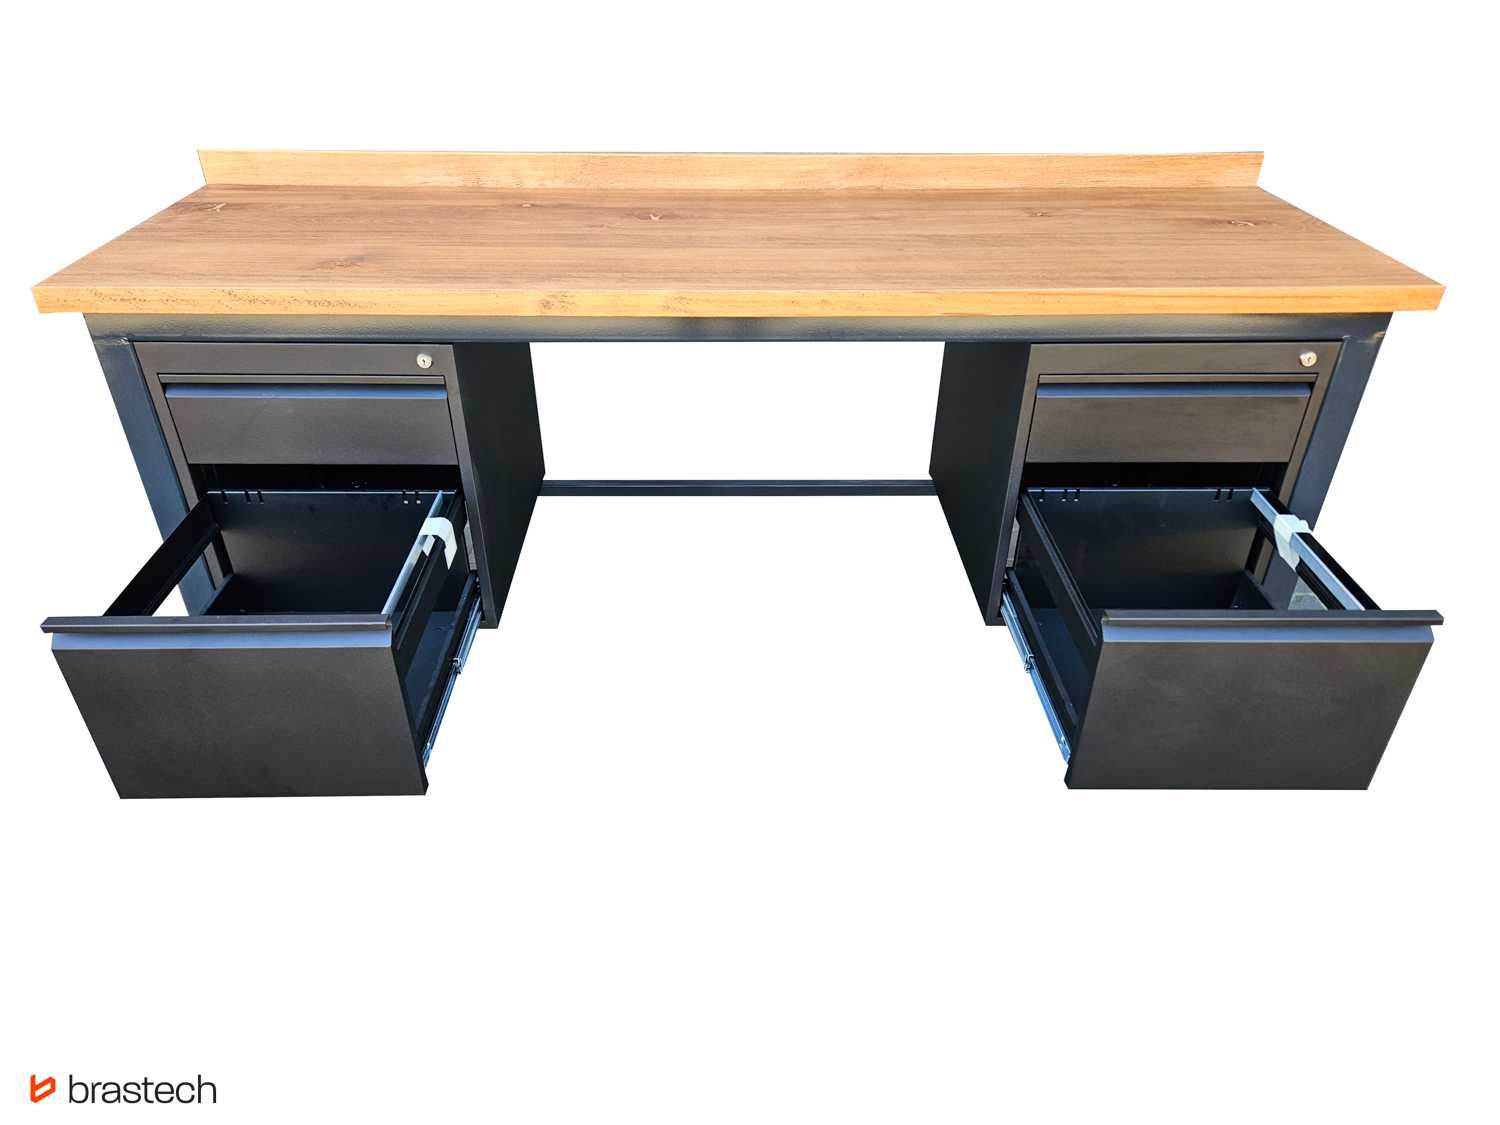 Stół biurowy warsztatowy loft 200x62 cm GARAŻ BIURO blat drewniany lof